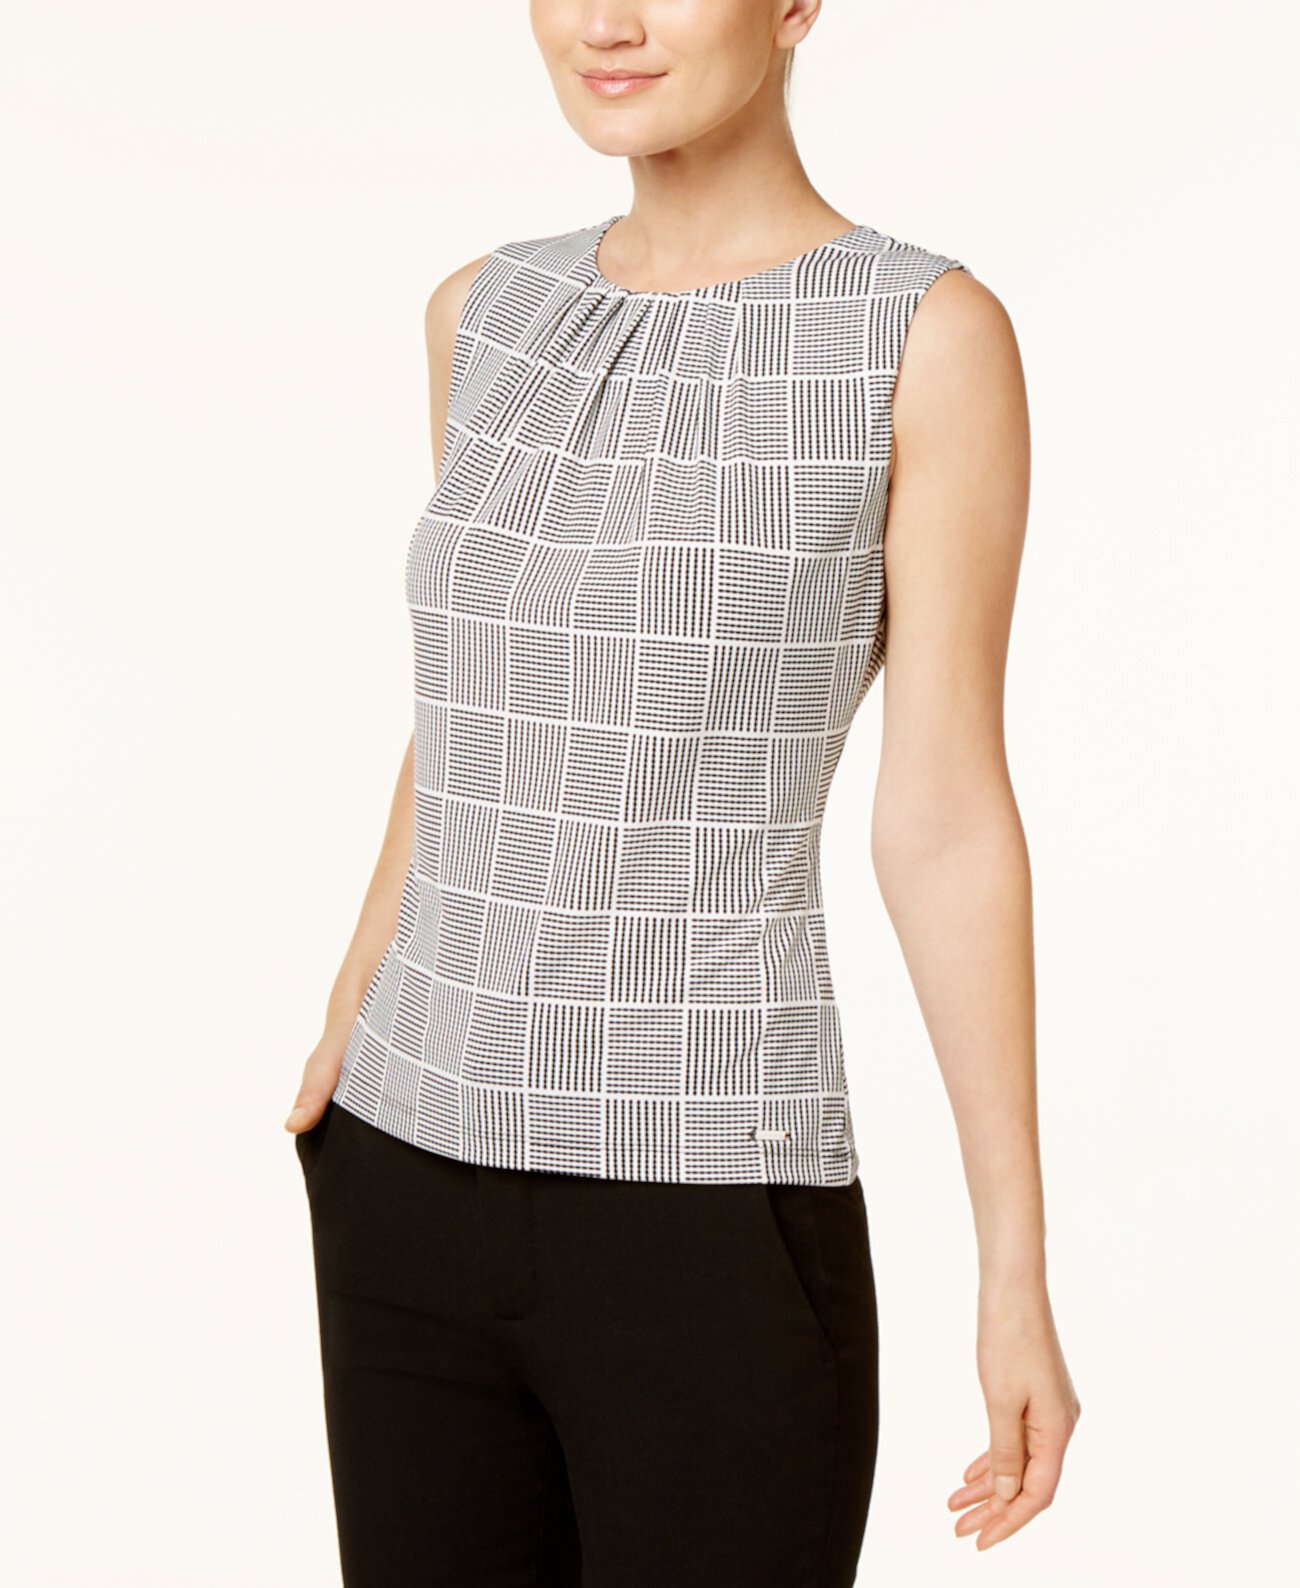 Женская блузка с принтом и складчатым воротником Calvin Klein, разные размеры Calvin Klein